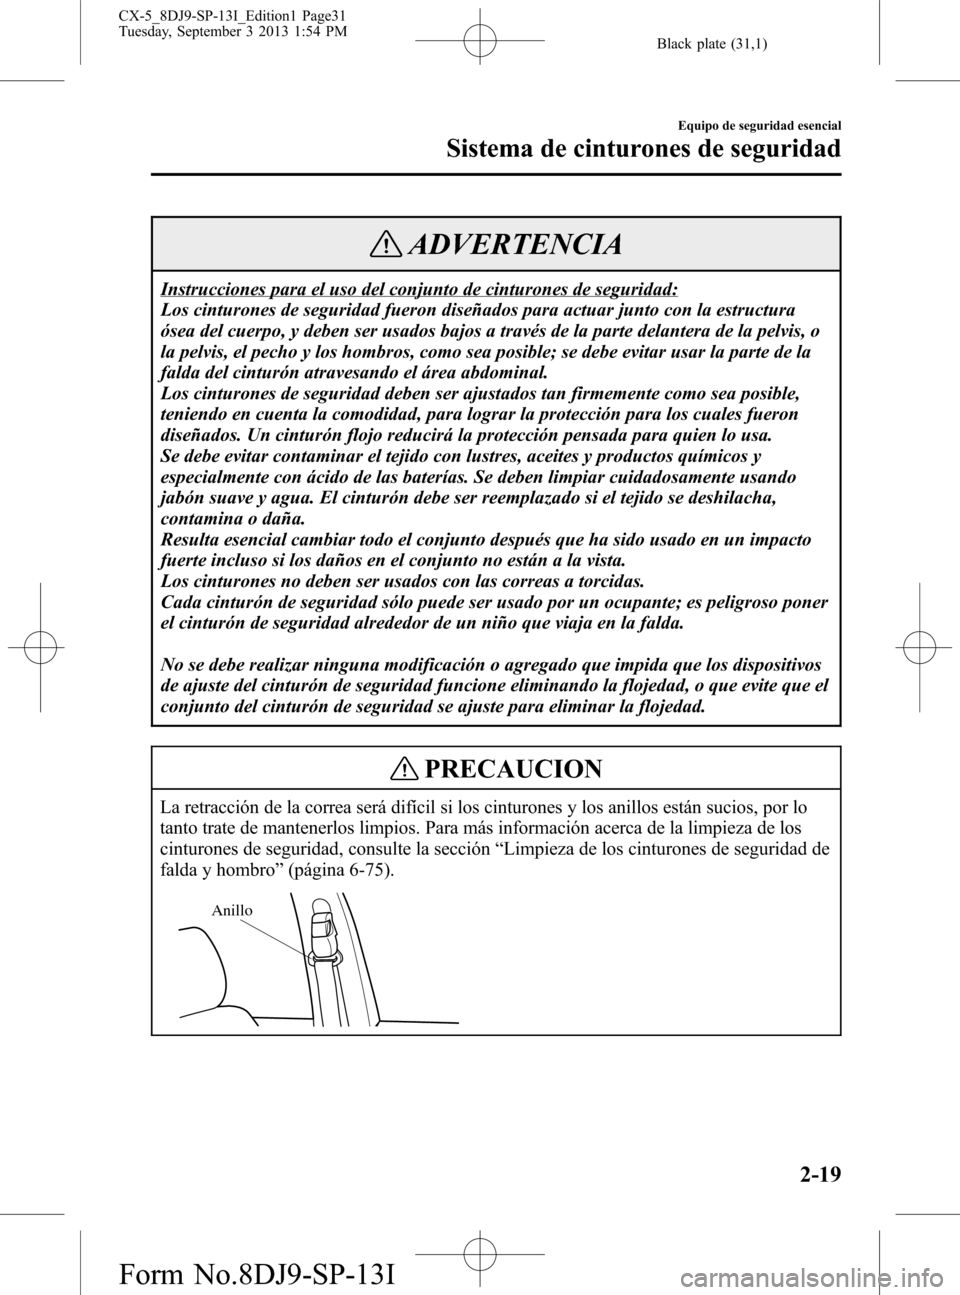 MAZDA MODEL CX-5 2014  Manual del propietario (in Spanish) Black plate (31,1)
ADVERTENCIA
Instrucciones para el uso del conjunto de cinturones de seguridad:
Los cinturones de seguridad fueron diseñados para actuar junto con la estructura
ósea del cuerpo, y 